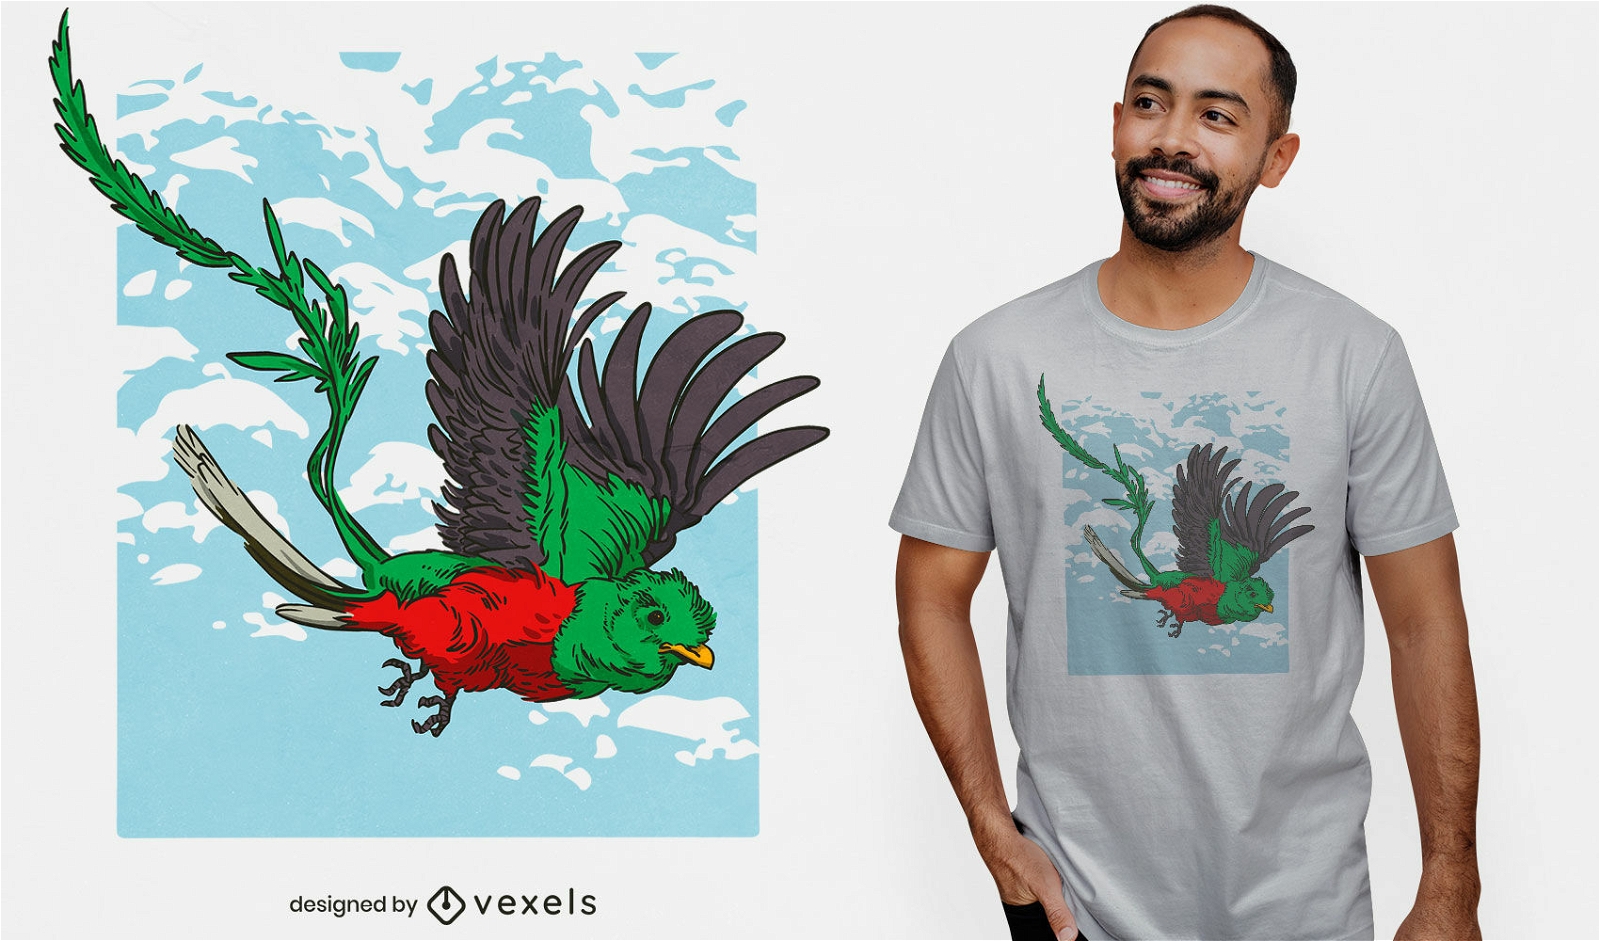 Dise?o de camiseta de p?jaro cultural Quetzal.